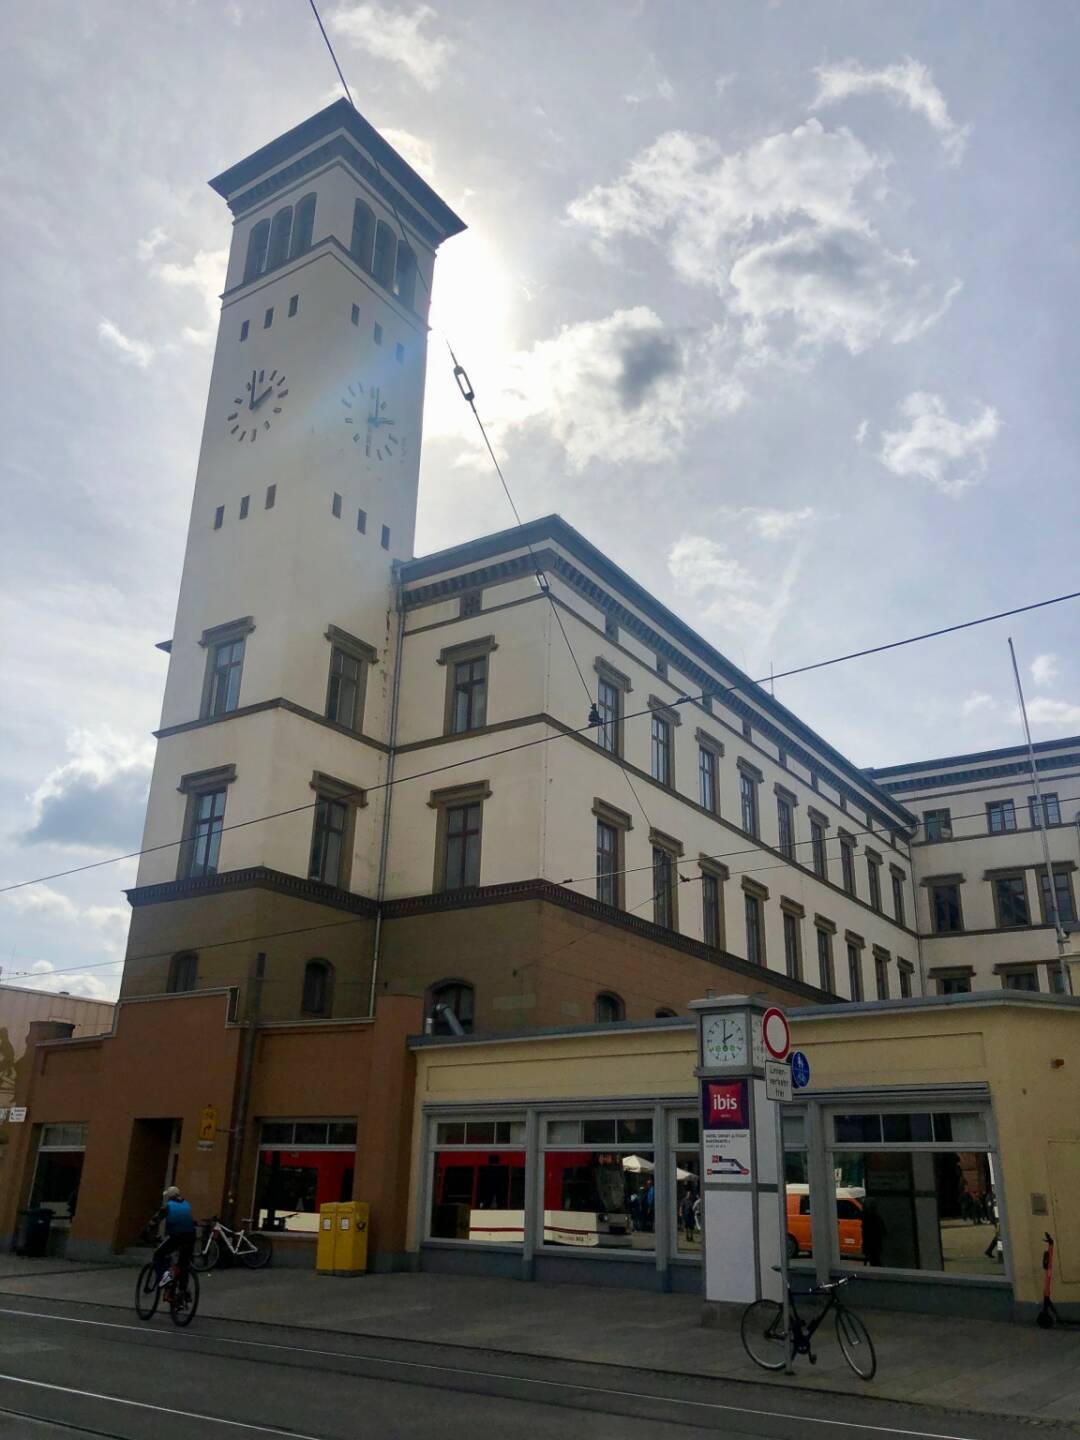 S Immo, Immobilie, alte Reichsbahndirektion, Erfurt, Credit: beigestellt